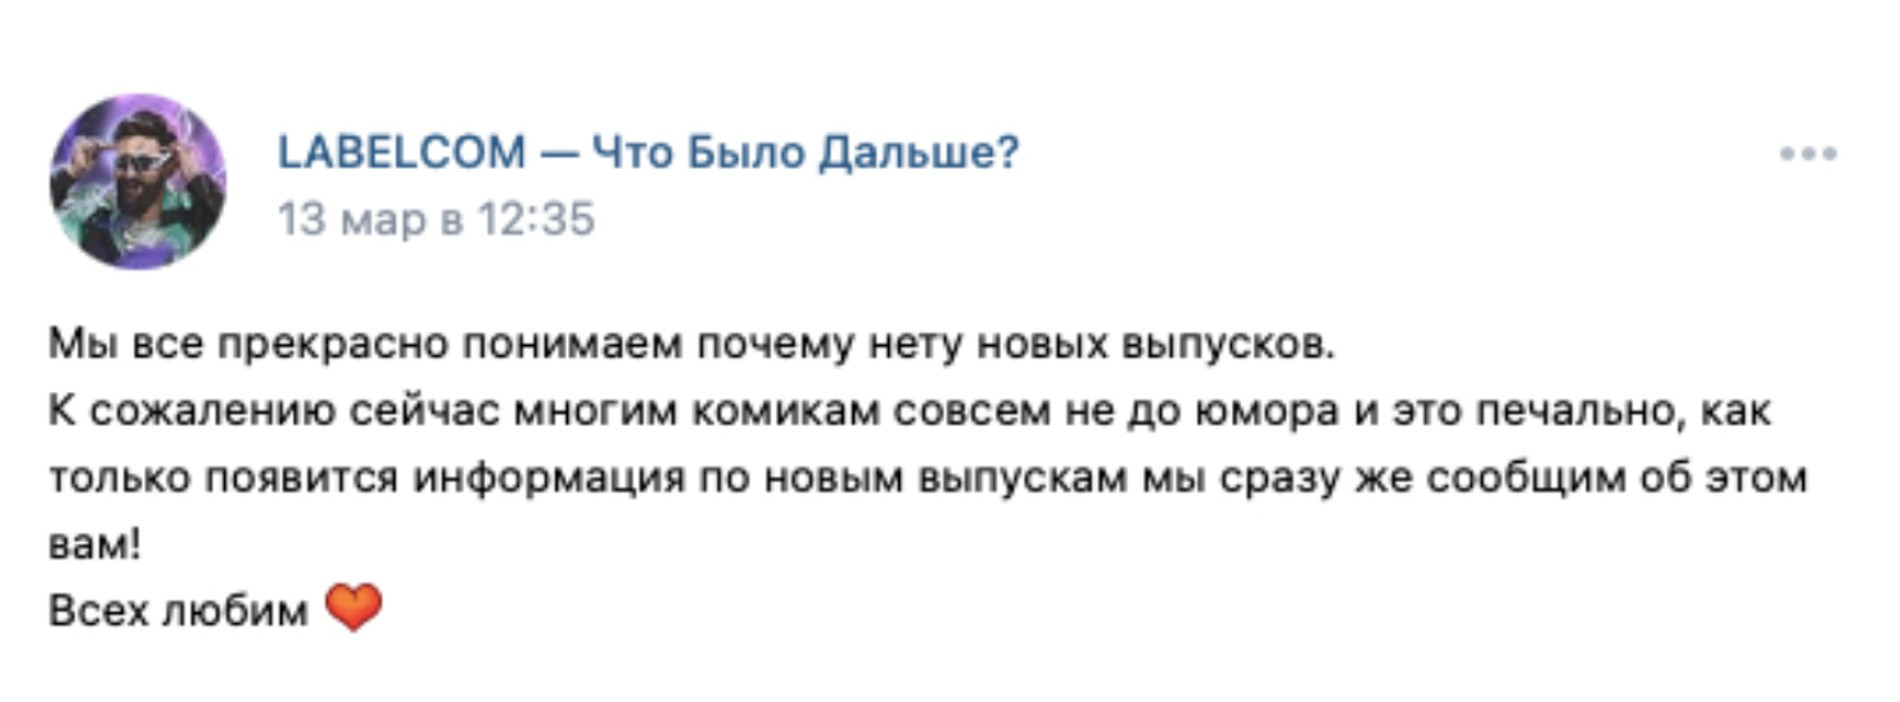 По словам Дарьи, официального сообщества «Что было дальше?» ВКонтакте нет